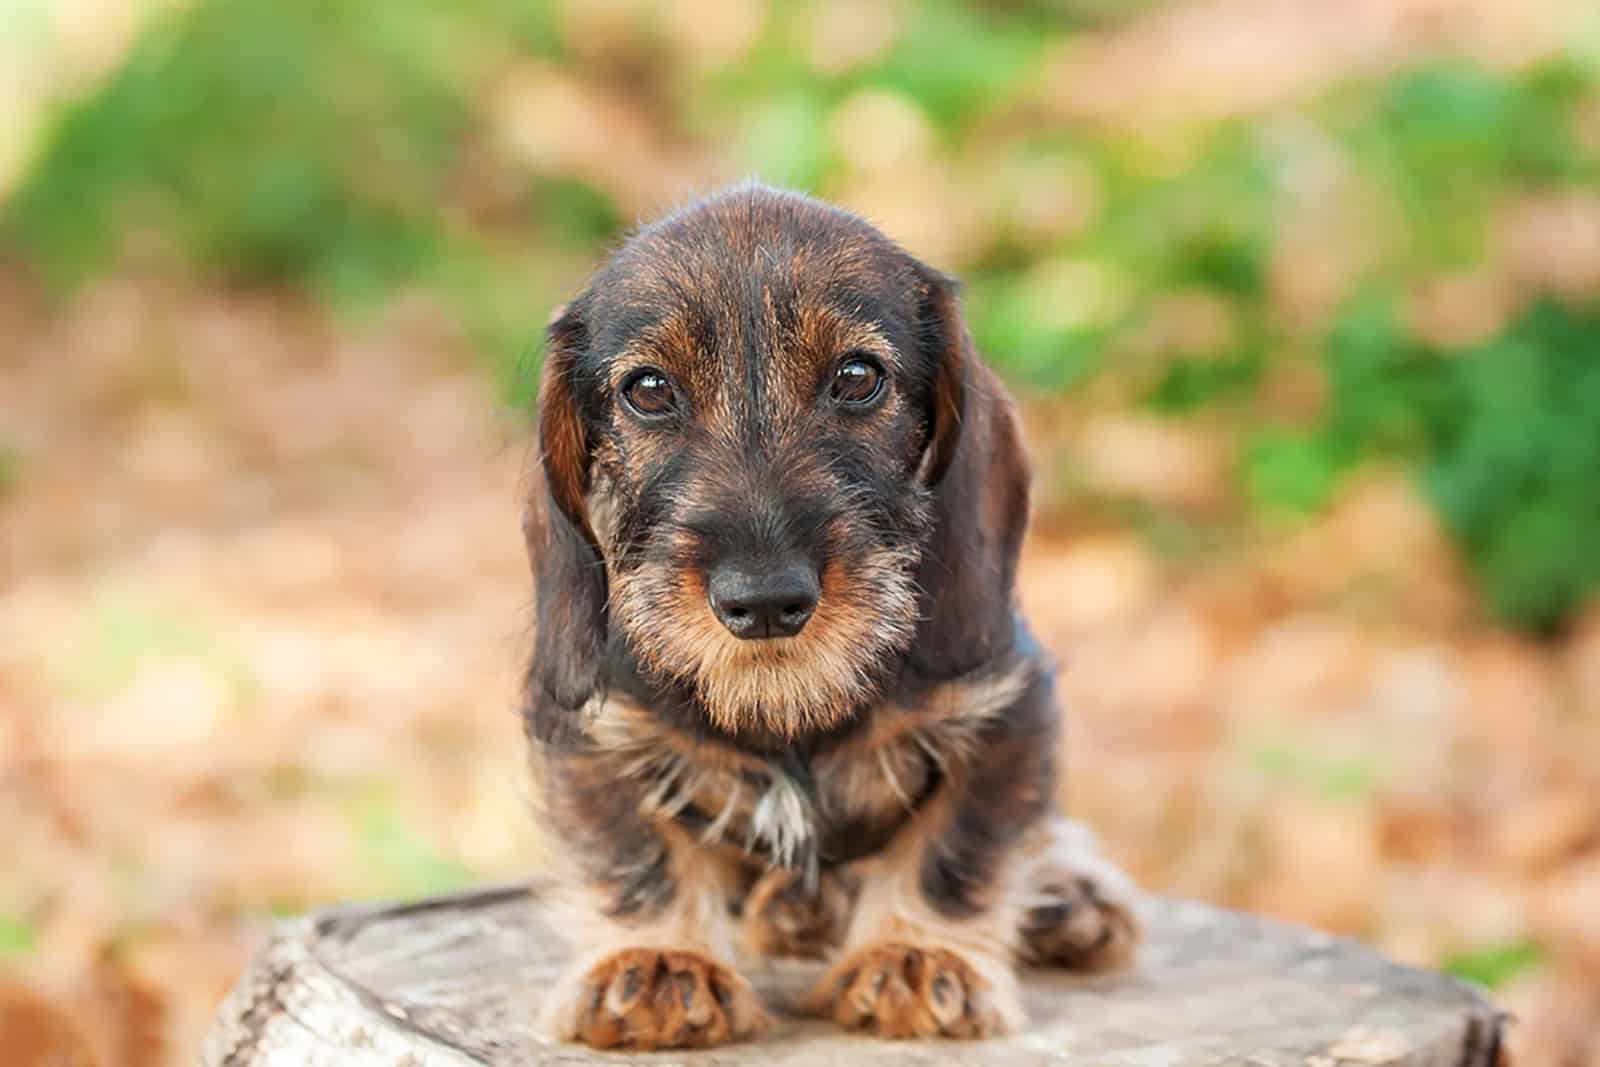 cute dachshund puppy sitting on a tree stump